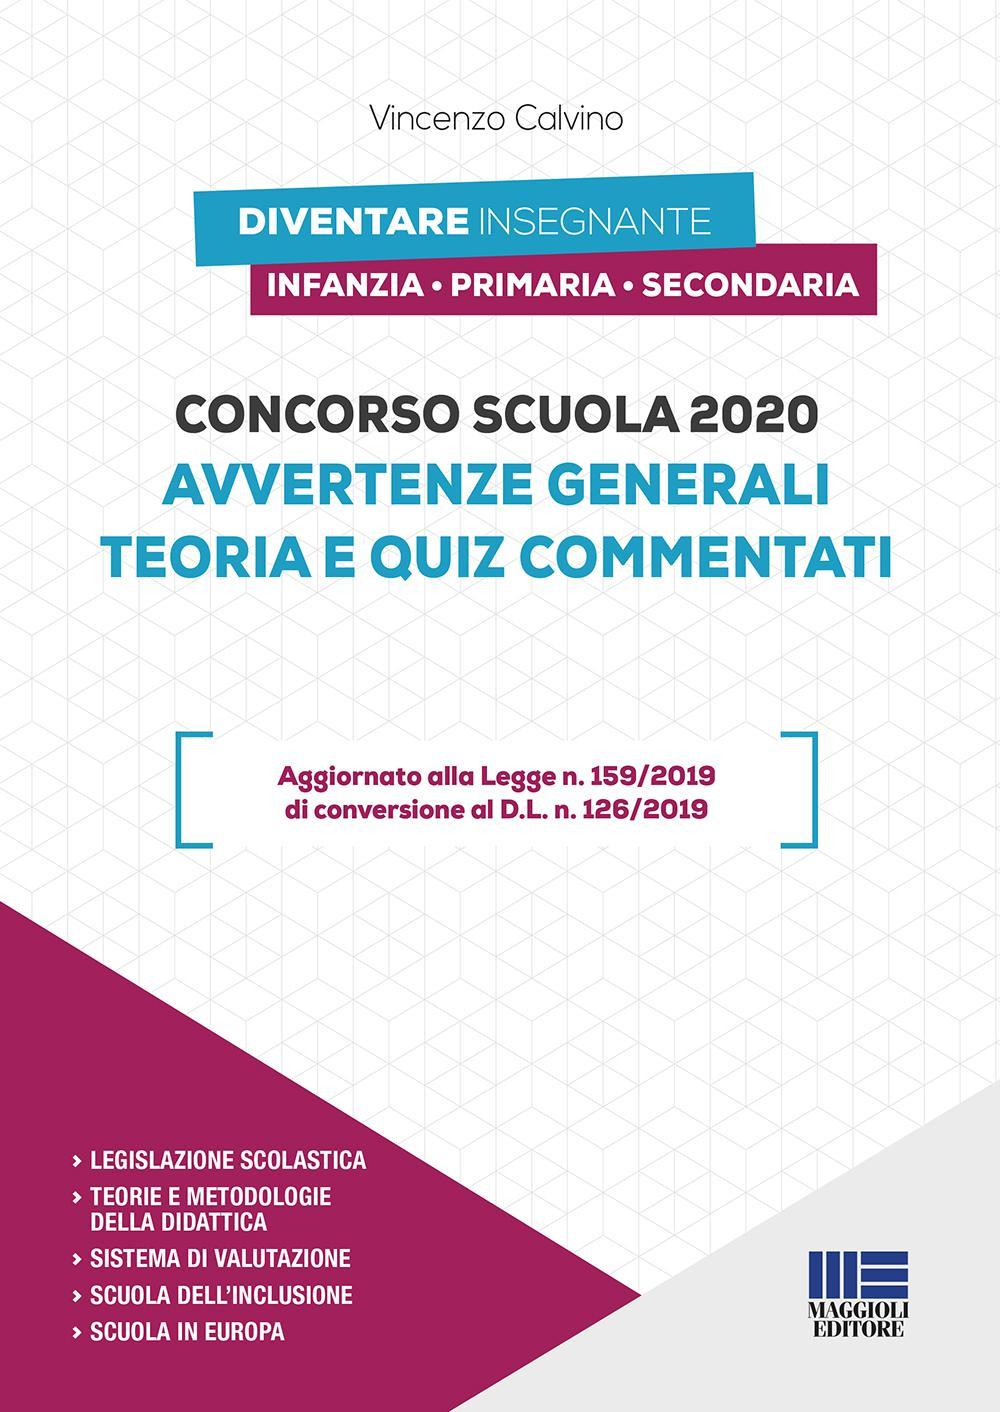 CONCORSO SCUOLA 2020 – AVVERTENZE GENERALI